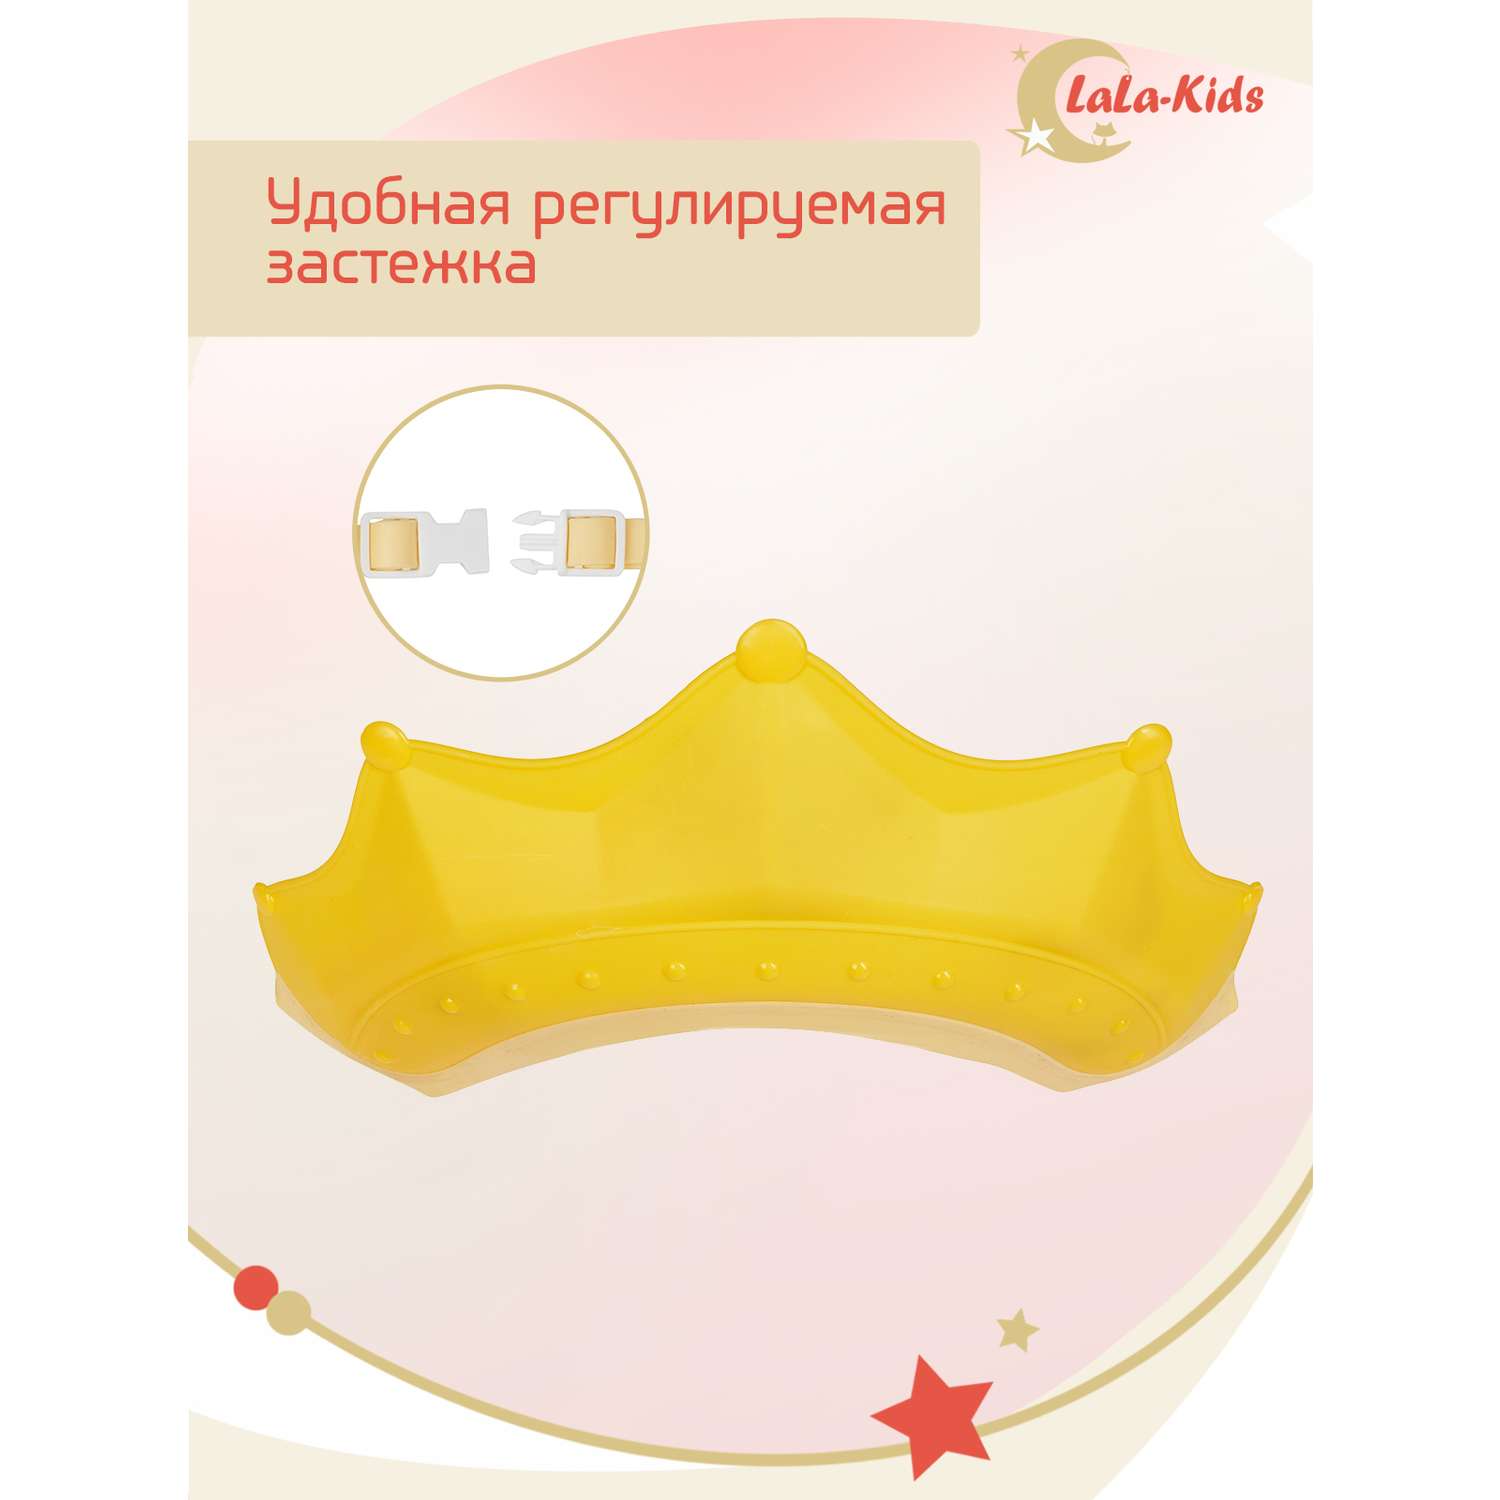 Козырек LaLa-Kids для мытья головы Корона с регулируемым размером - фото 6